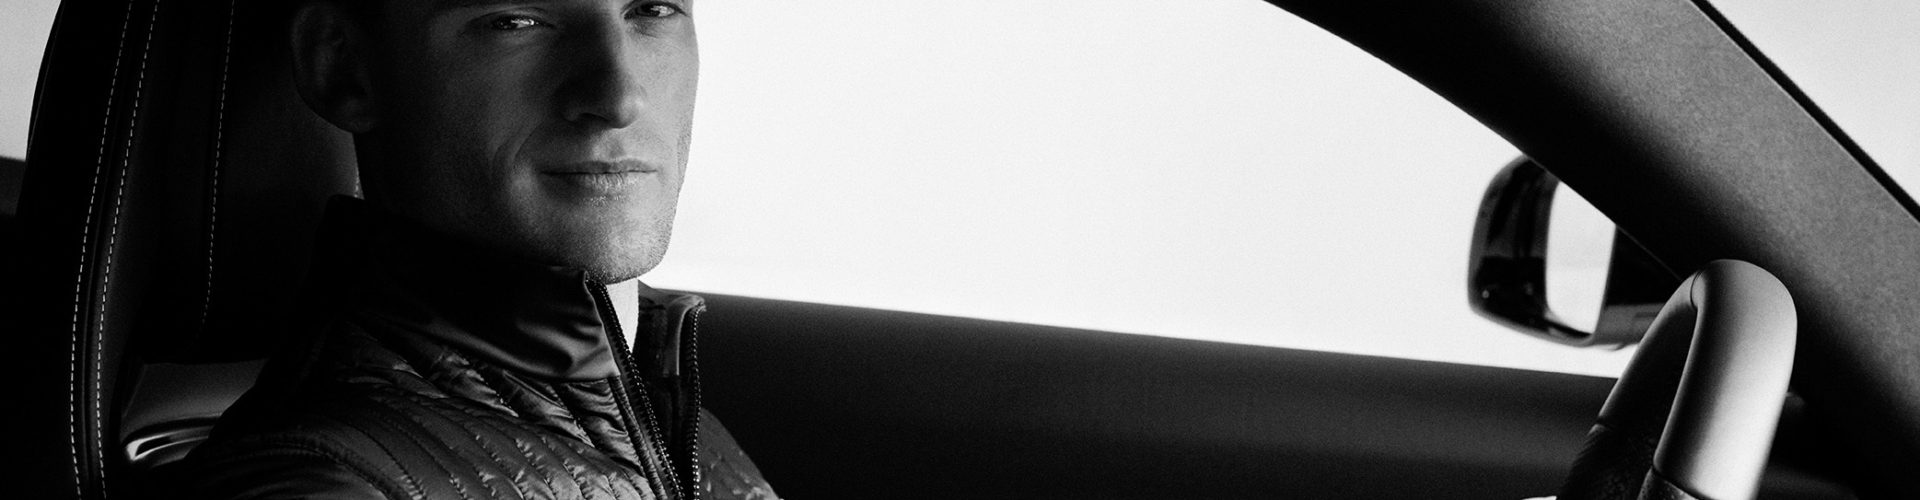 Mercedes-AMG-Rennfahrer Maro Engel repräsentiert  als AMG-Markenbotschafter die Bekleidungslinie.  Seit 2014 ist ASSOS of Switzerland Partner des Mercedes-AMG PETRONAS Formel 1 Teams. Mercedes-AMG racing driver Maro Engel represents the clothing range as an AMG brand ambassador.  ASSOS of Switzerland has been a partner of the Mercedes-AMG PETRONAS Formula 1 team since 2014.